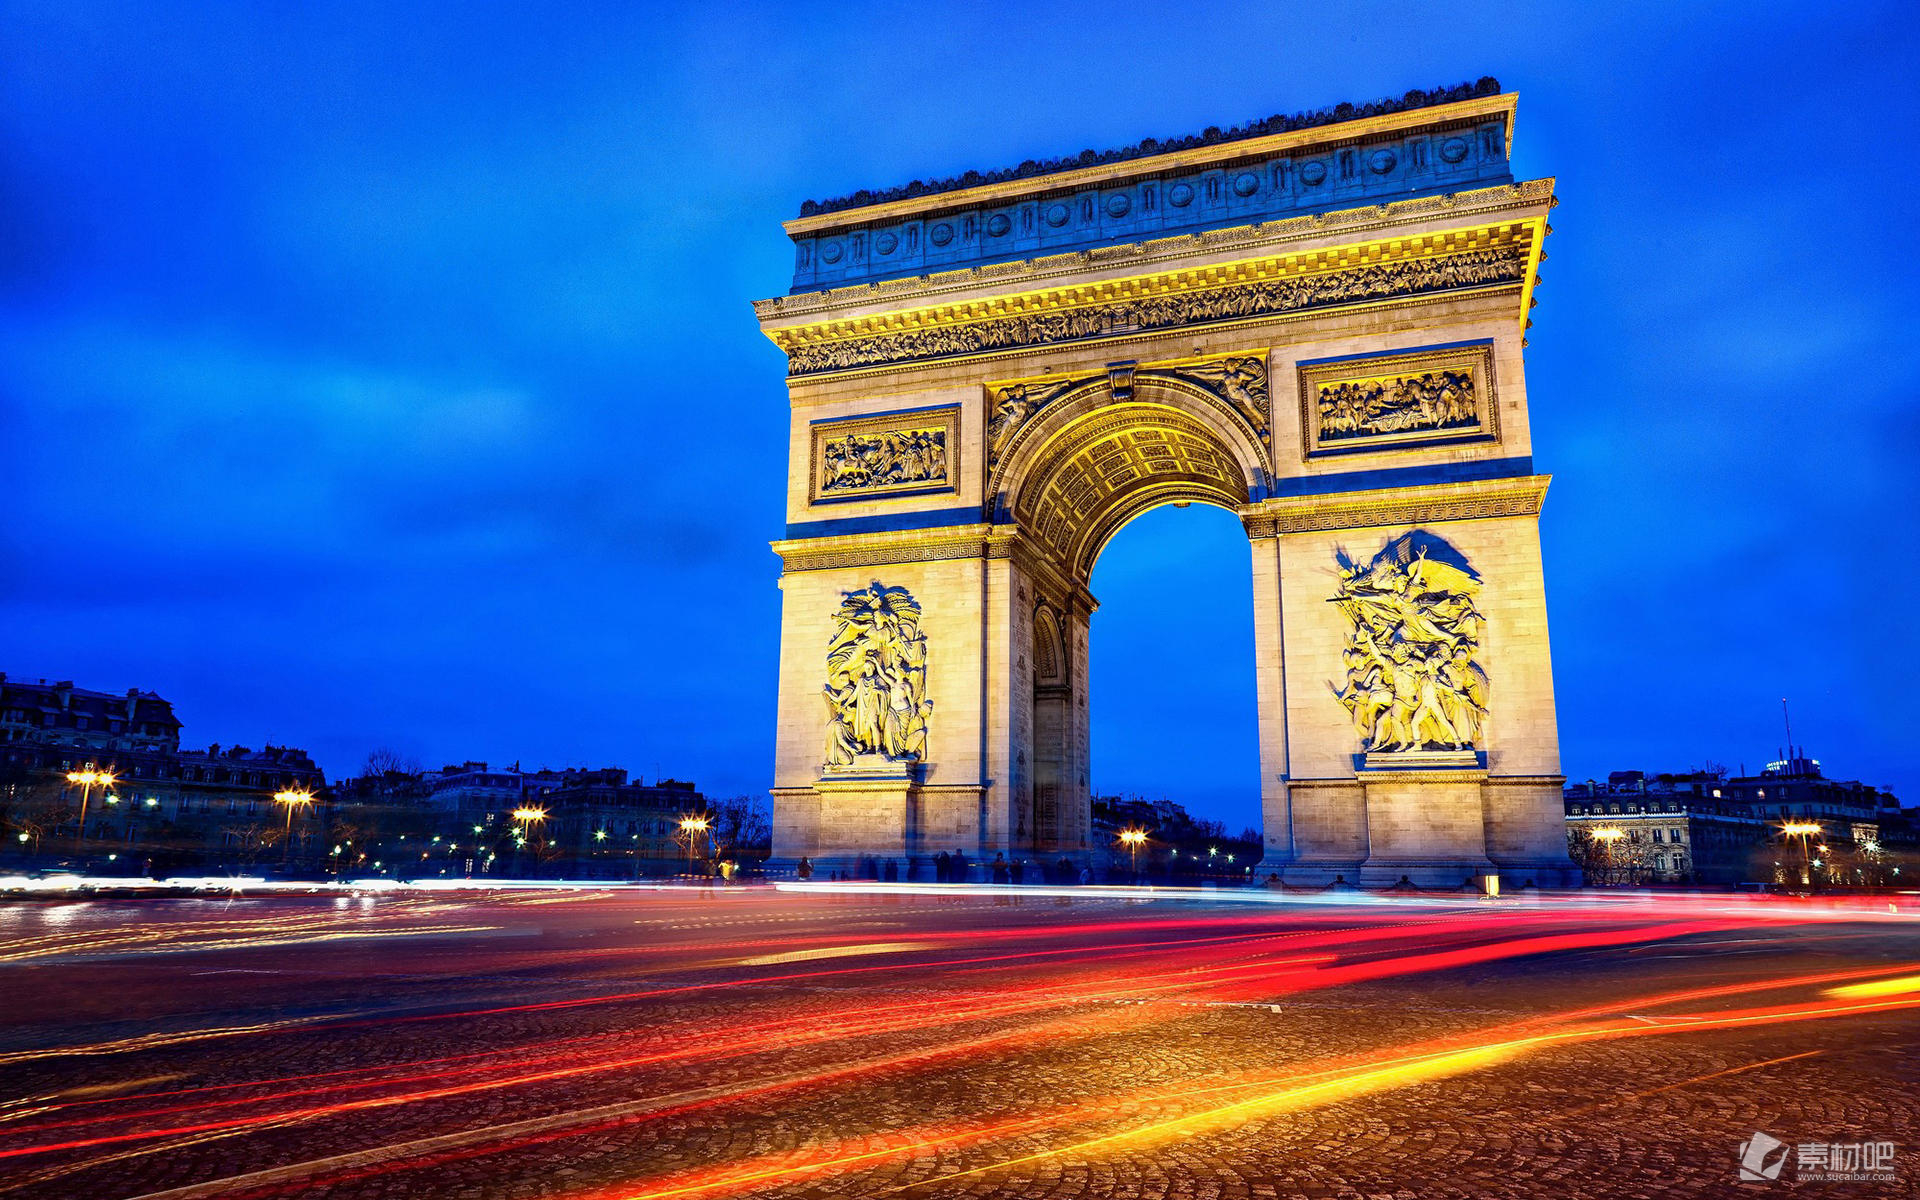 【携程攻略】巴黎卢浮宫博物馆景点,卢浮宫是法国最大的王宫建筑之一, 位于首都巴黎塞纳河畔、巴黎歌剧院…